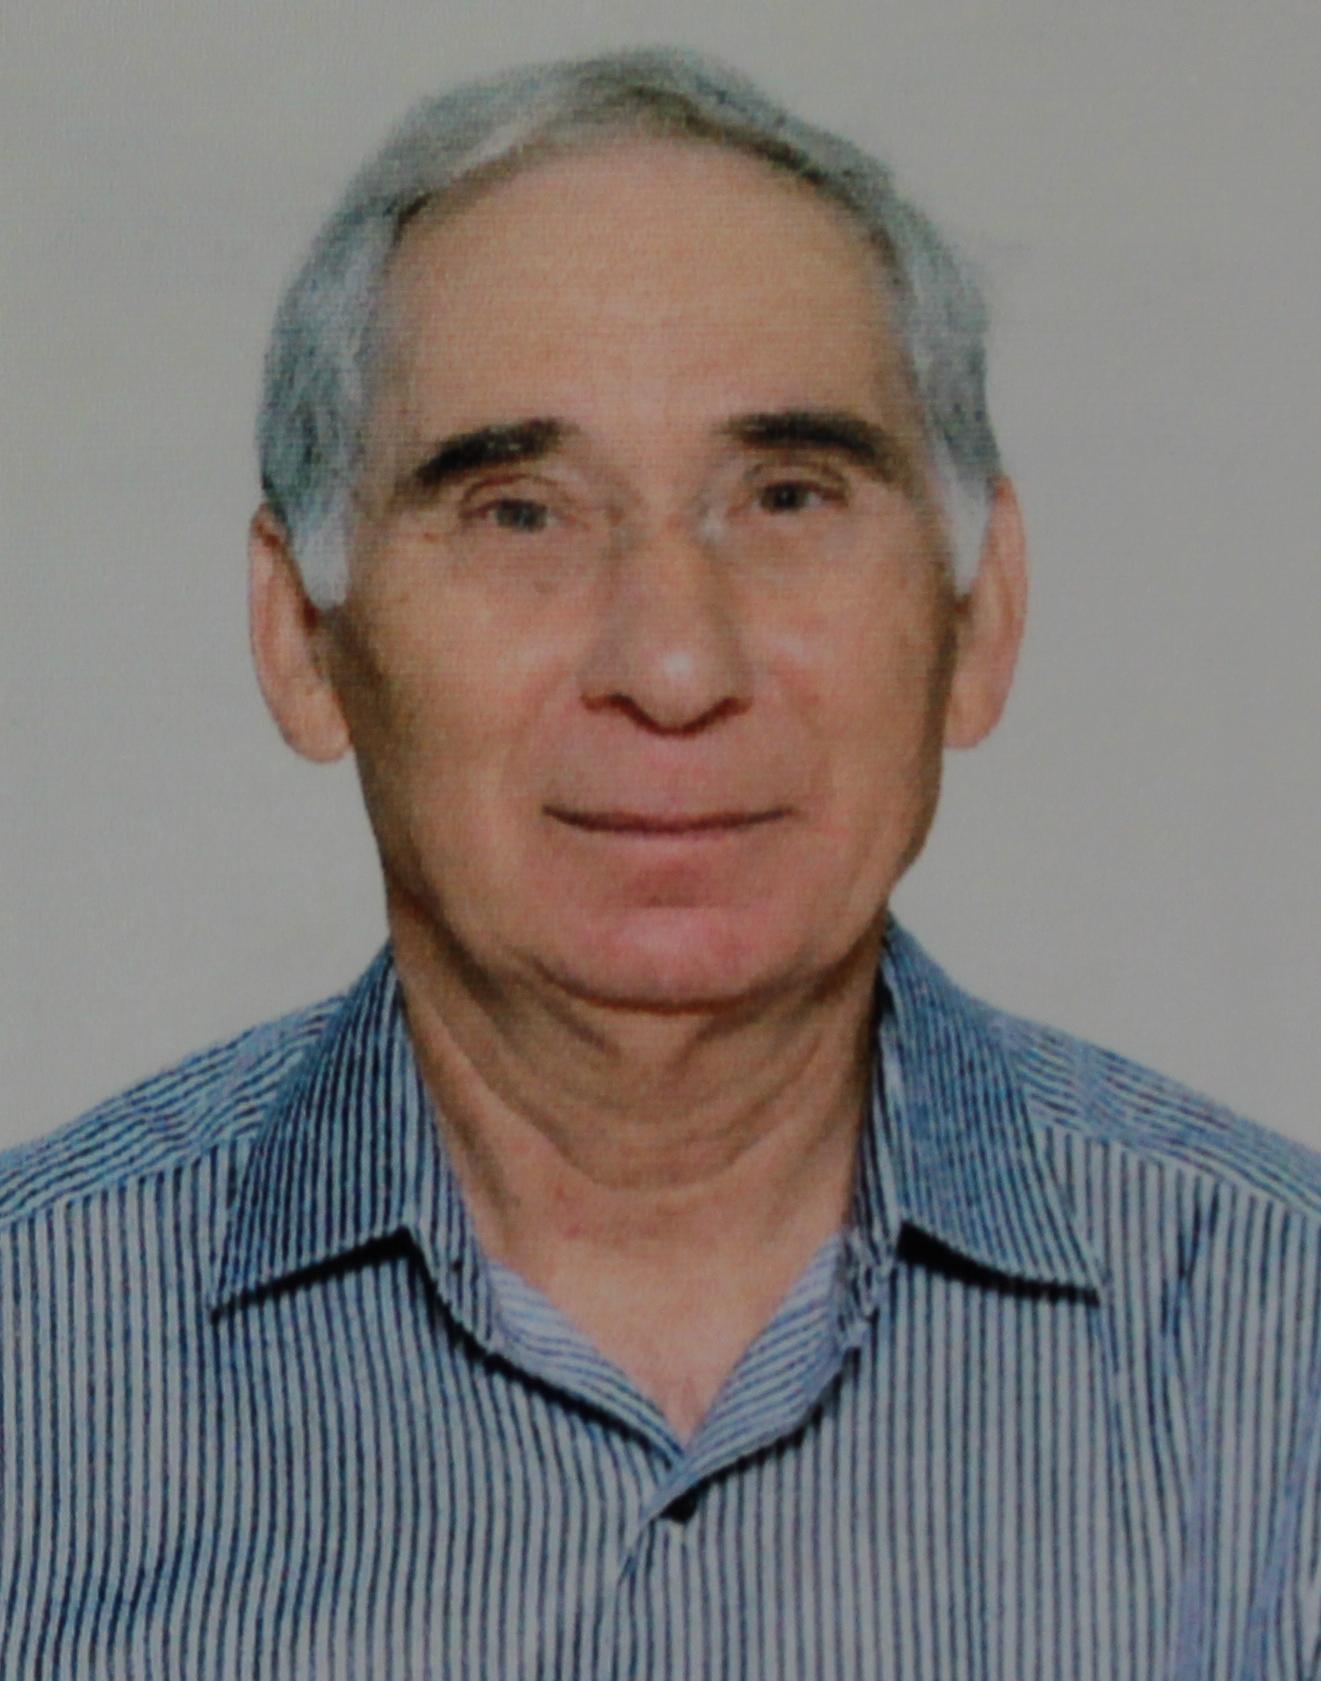 Manap Khazhmuradov